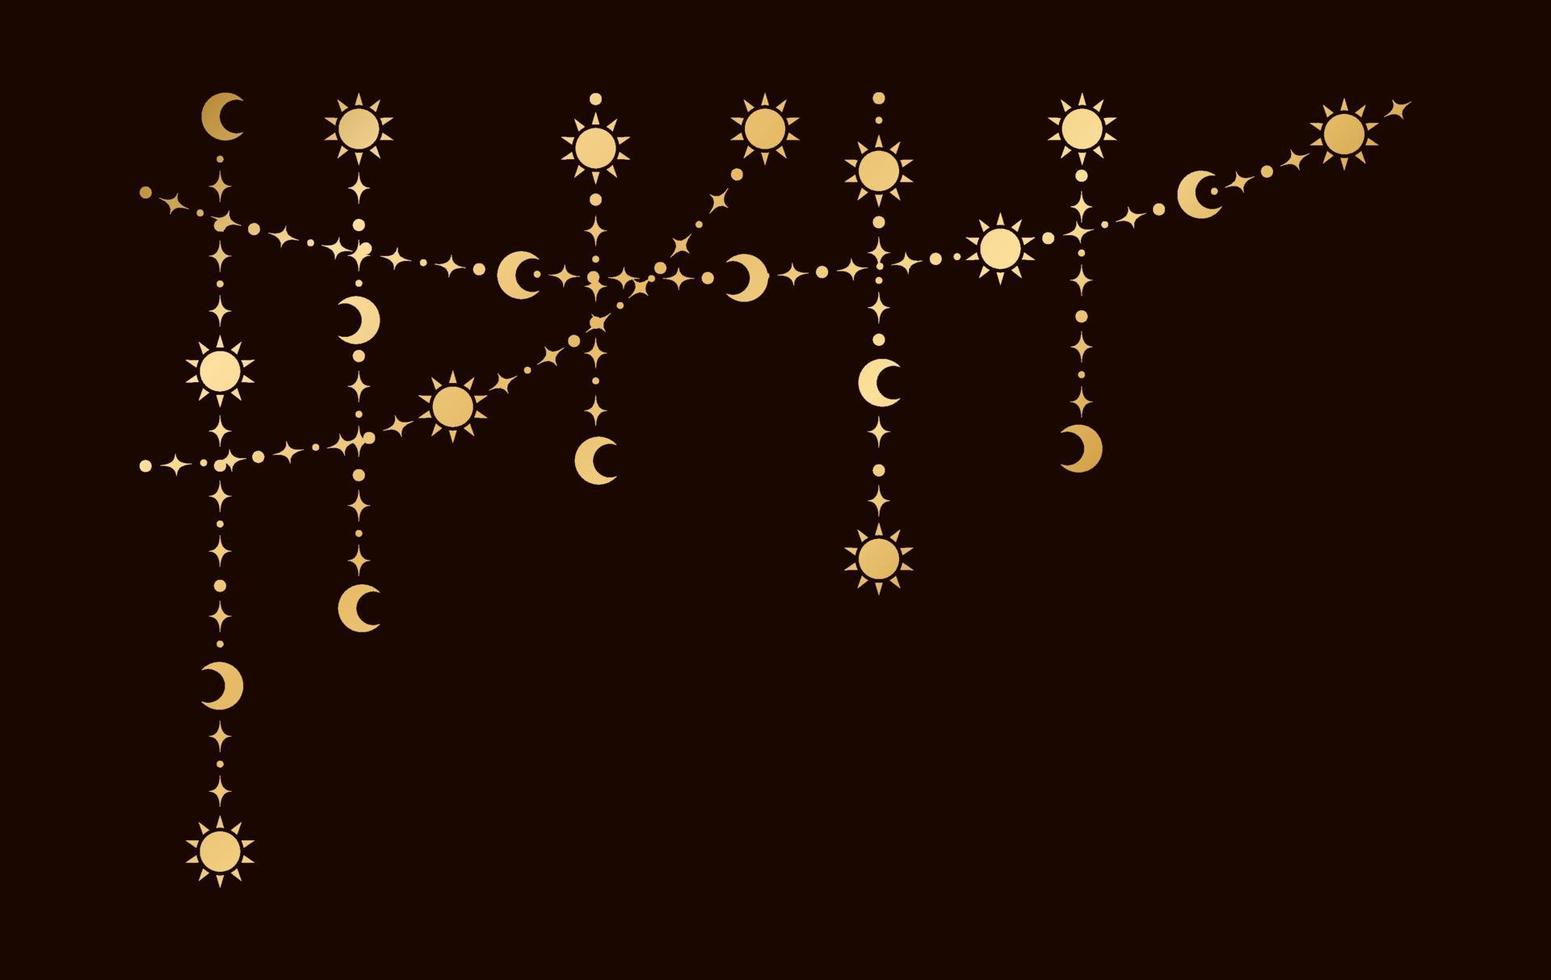 ouro místico celestial suspensão festão quadro, Armação canto com sol, estrelas, lua fases, crescentes. ornamentado boêmio mágico cortina decorativo elemento vetor